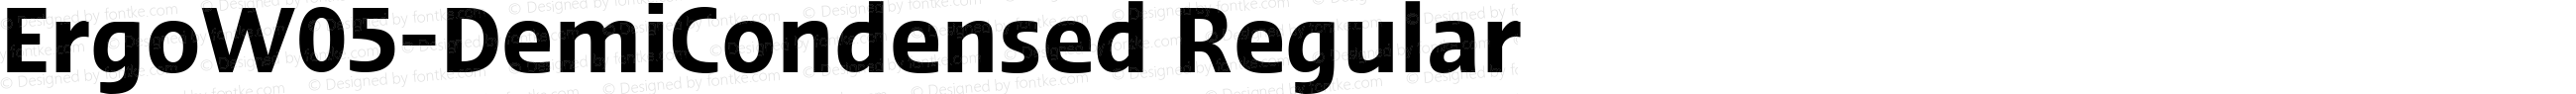 ErgoW05-DemiCondensed Regular